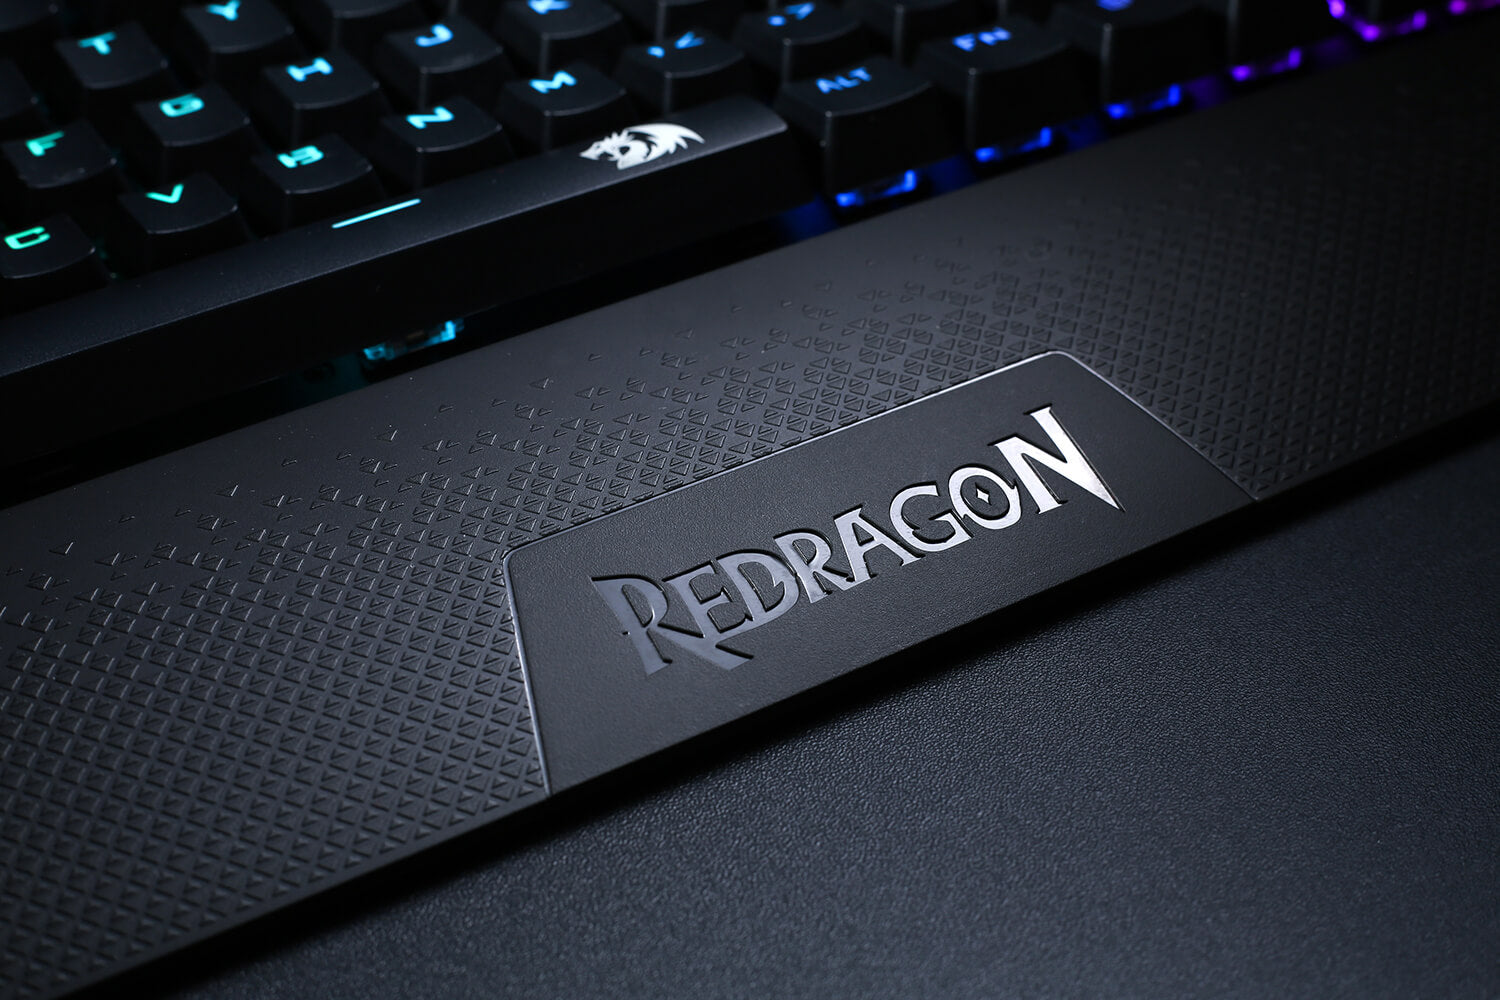 redragon tkl gaming keyboard